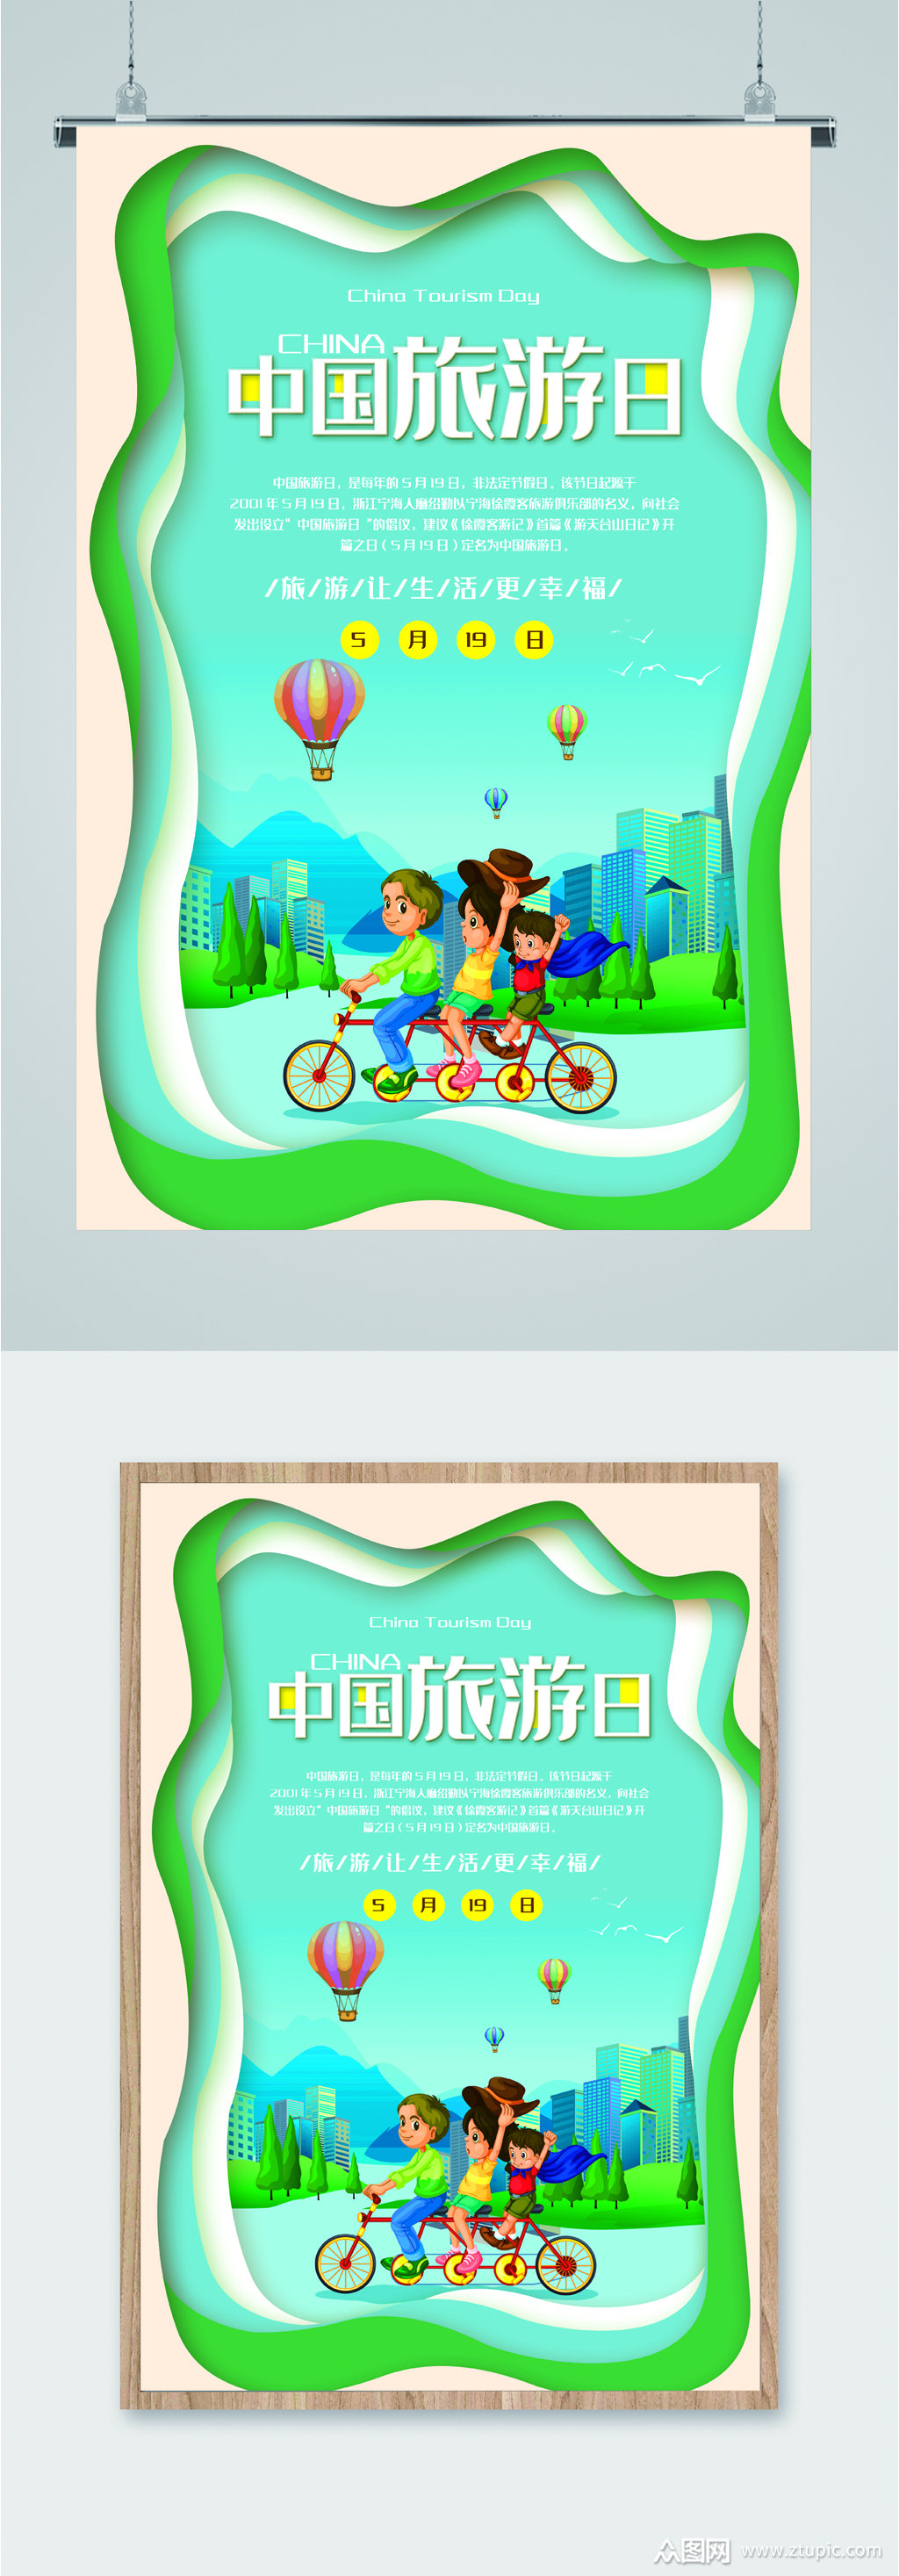 中国旅游日绿色海报素材